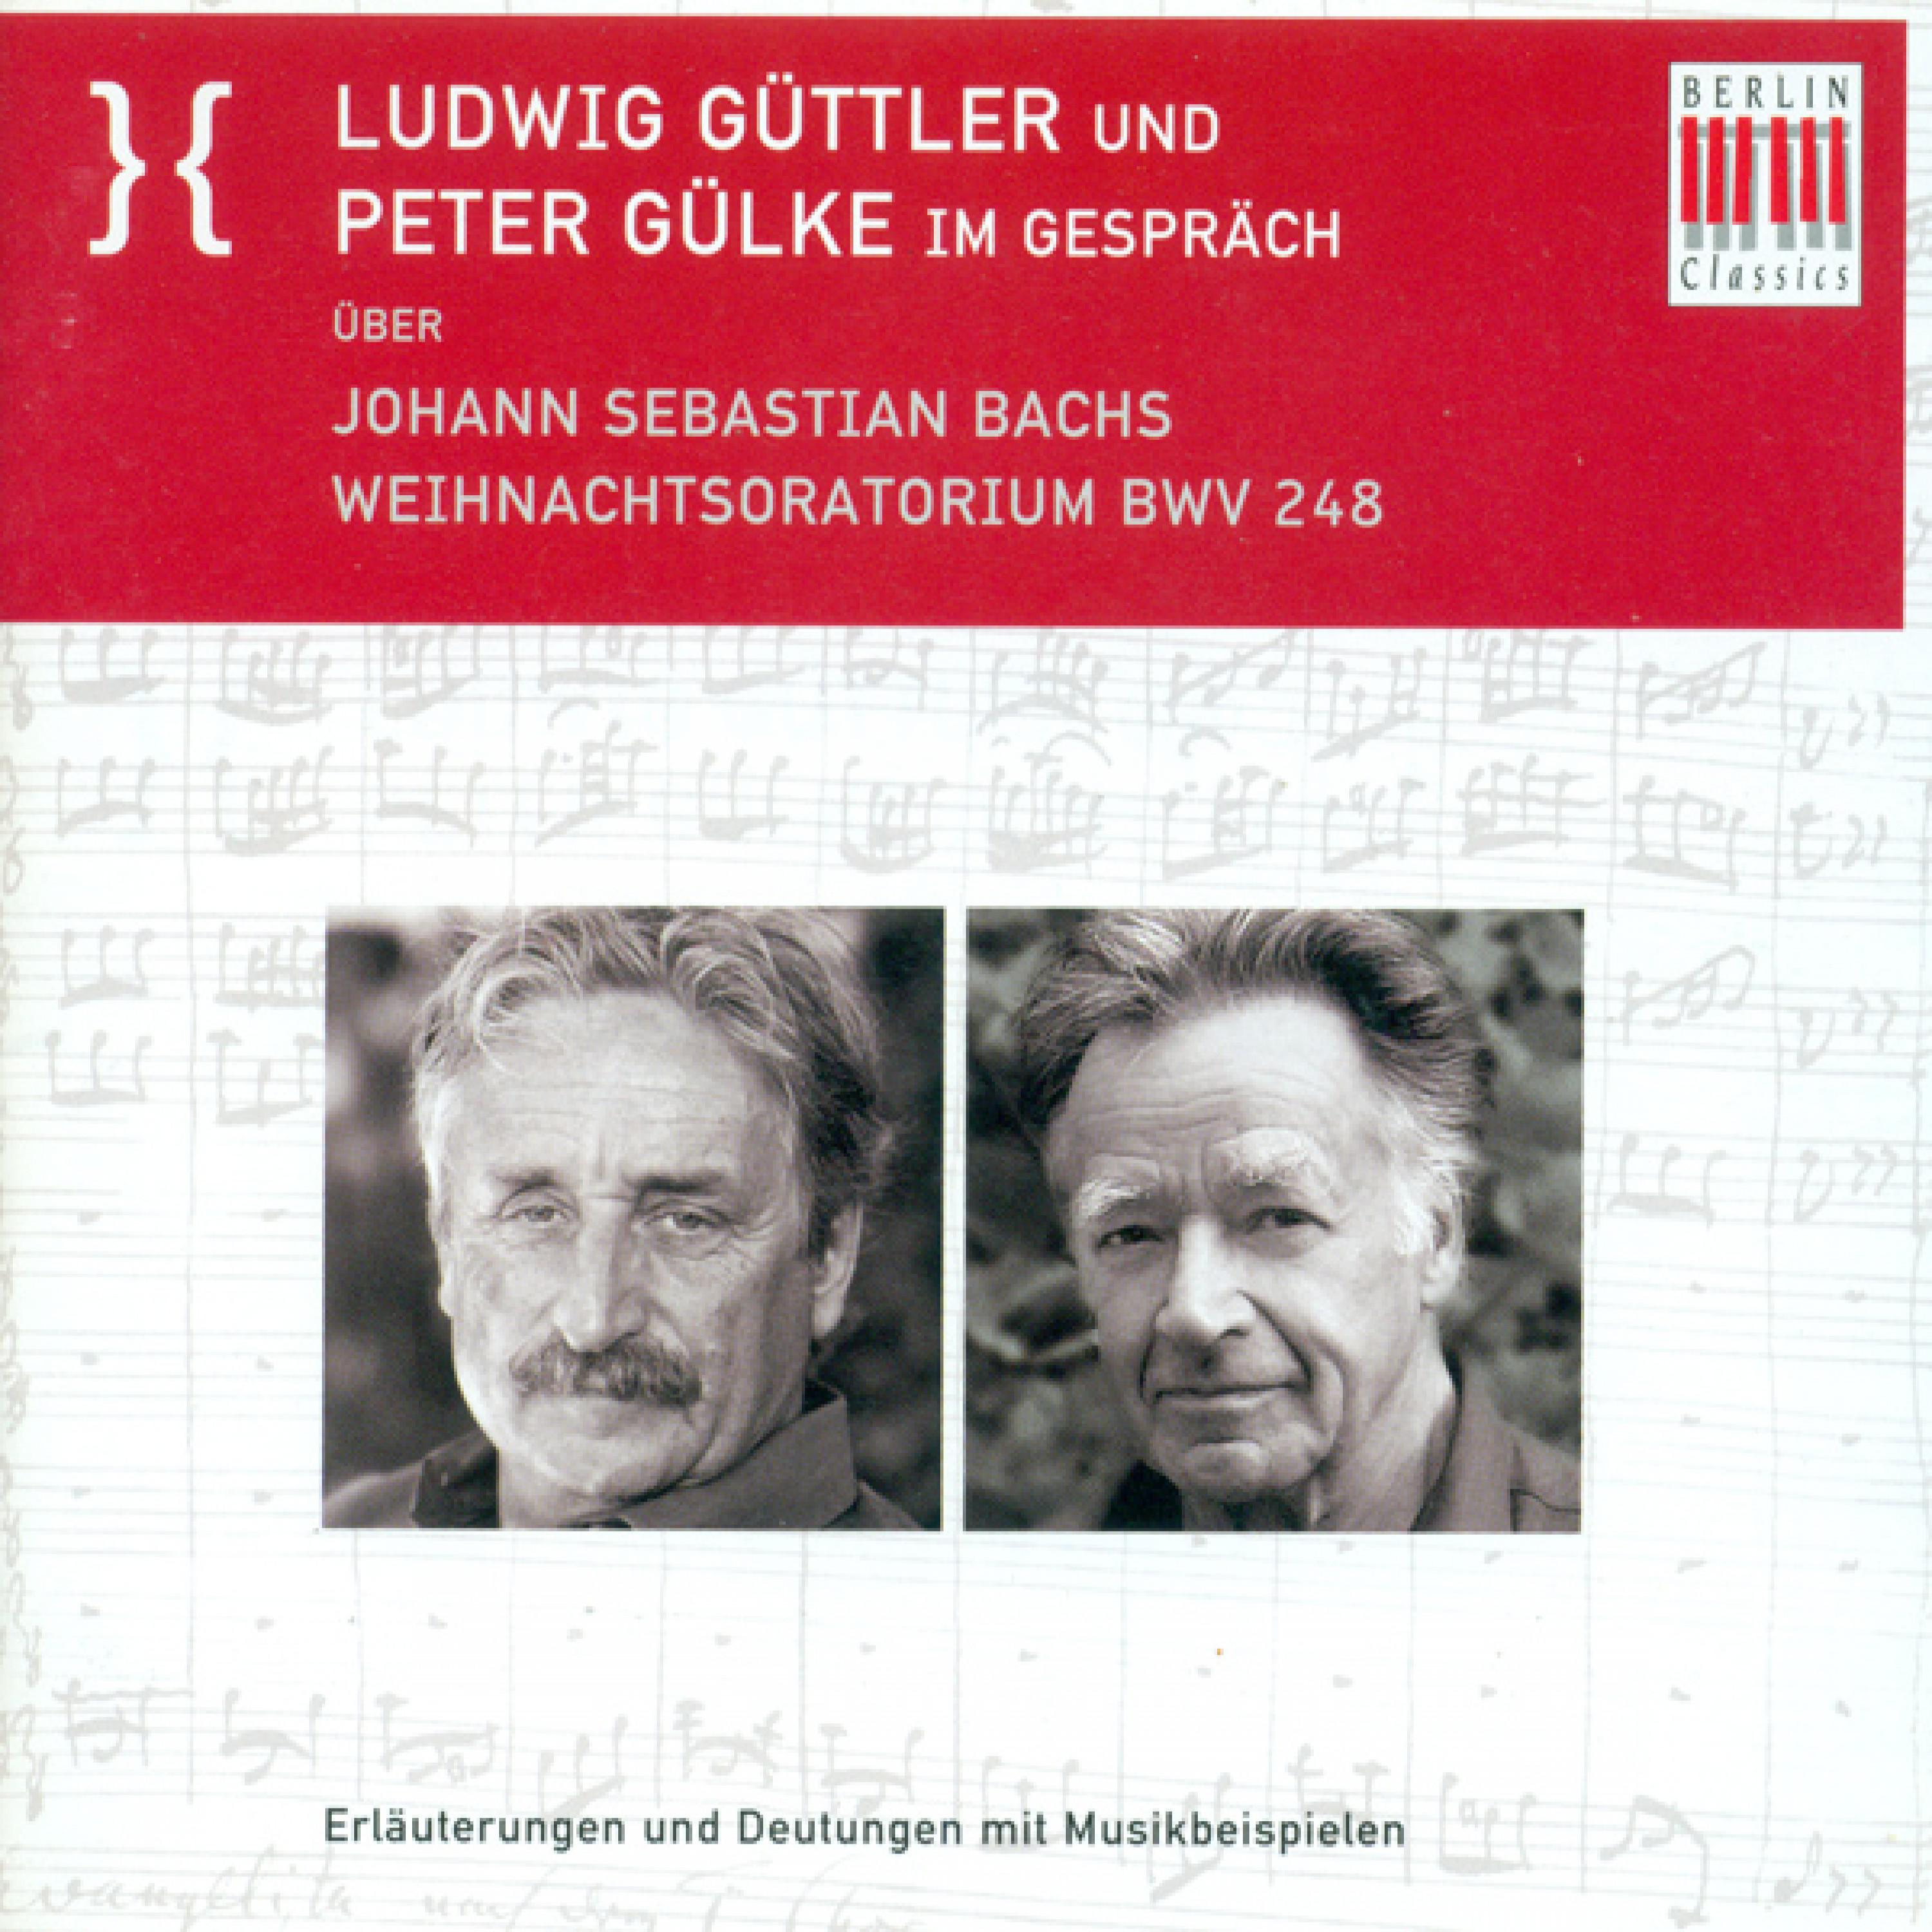 Ludwig Guttler und Peter Gulke Im Gesprach uber Johann Sebastian Bach's Weihnachtsoratorium BWV 248: Die Entwicklung der Ansprachen des "Du" und des "Er"